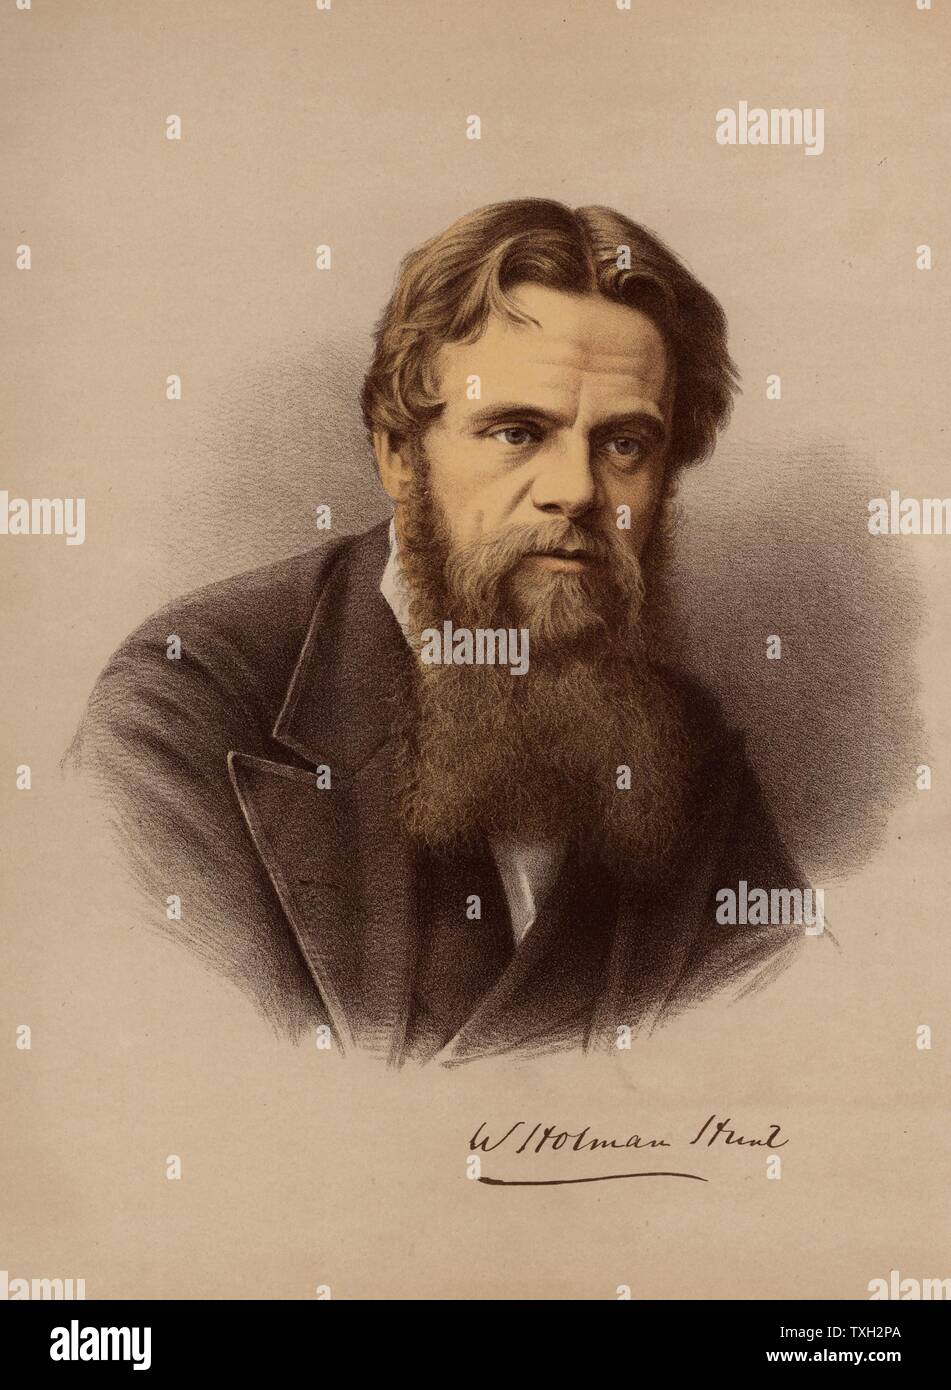 William Holman Hunt (1827-1910), britischer Maler und einer der Gründer der Pre-Raphaelite Brotherhood (1848). Mit dem Bundesverdienstkreuz (1905) ernannt. Von "Der moderne Portrait Gallery' (London, c 1880). Getönte Lithographie. Stockfoto